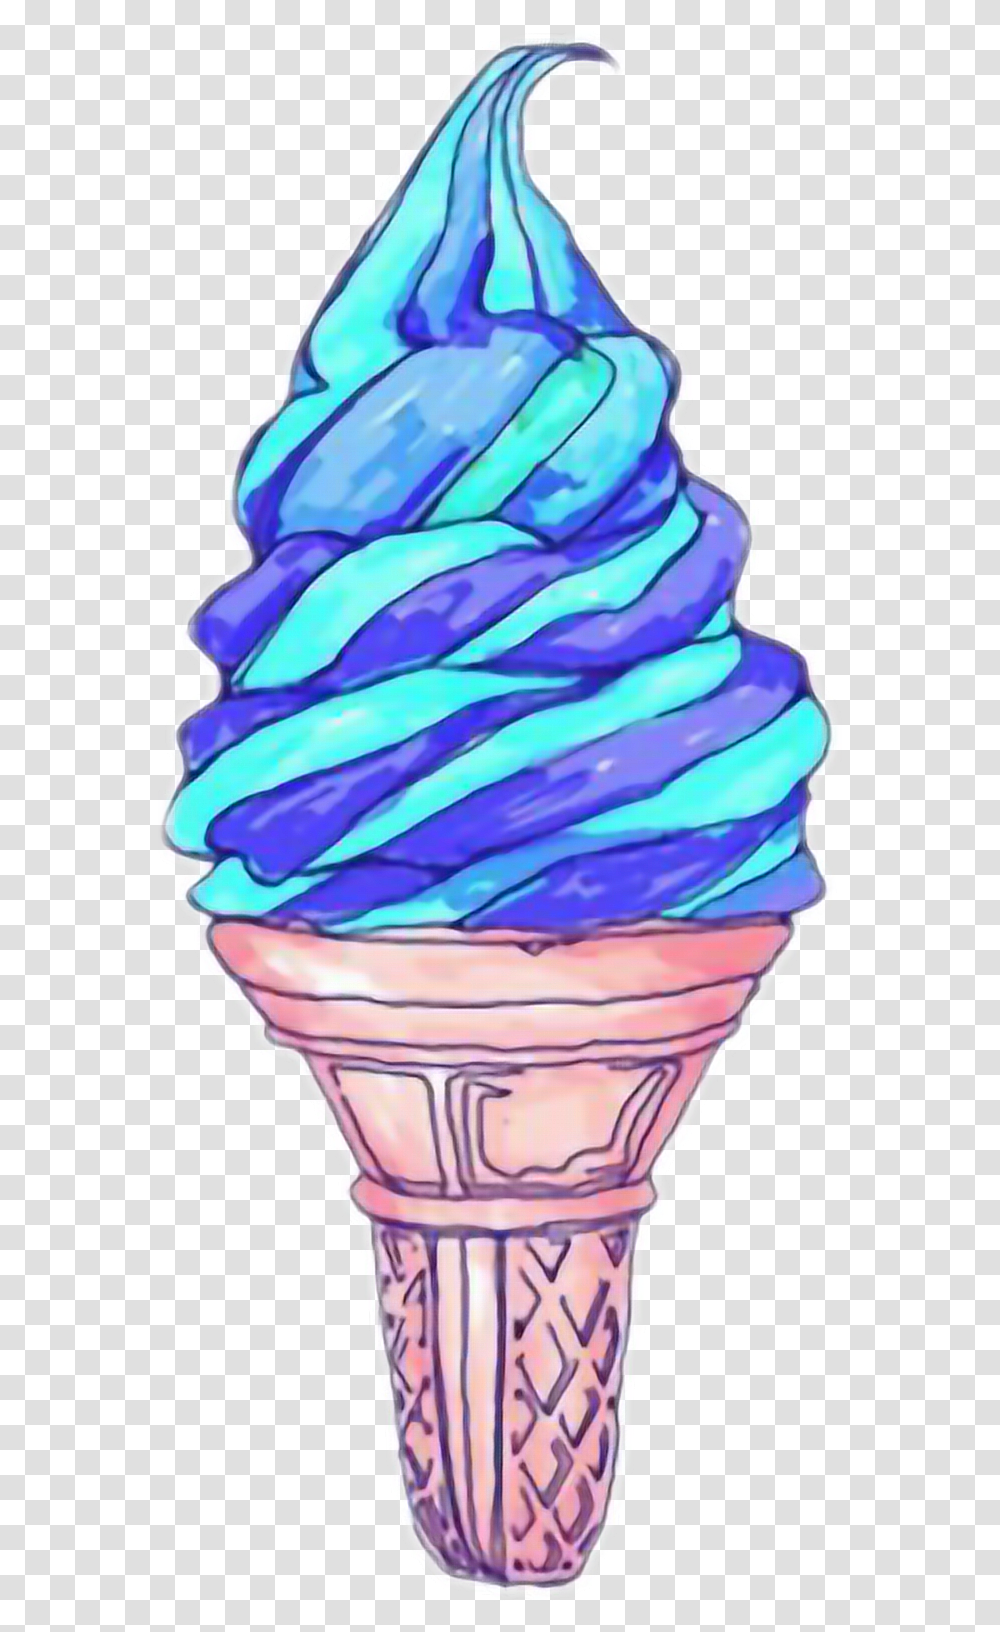 Ice Cream Tumblr Blue Ice Cream Drawing, Dessert, Food, Creme, Cone Transparent Png